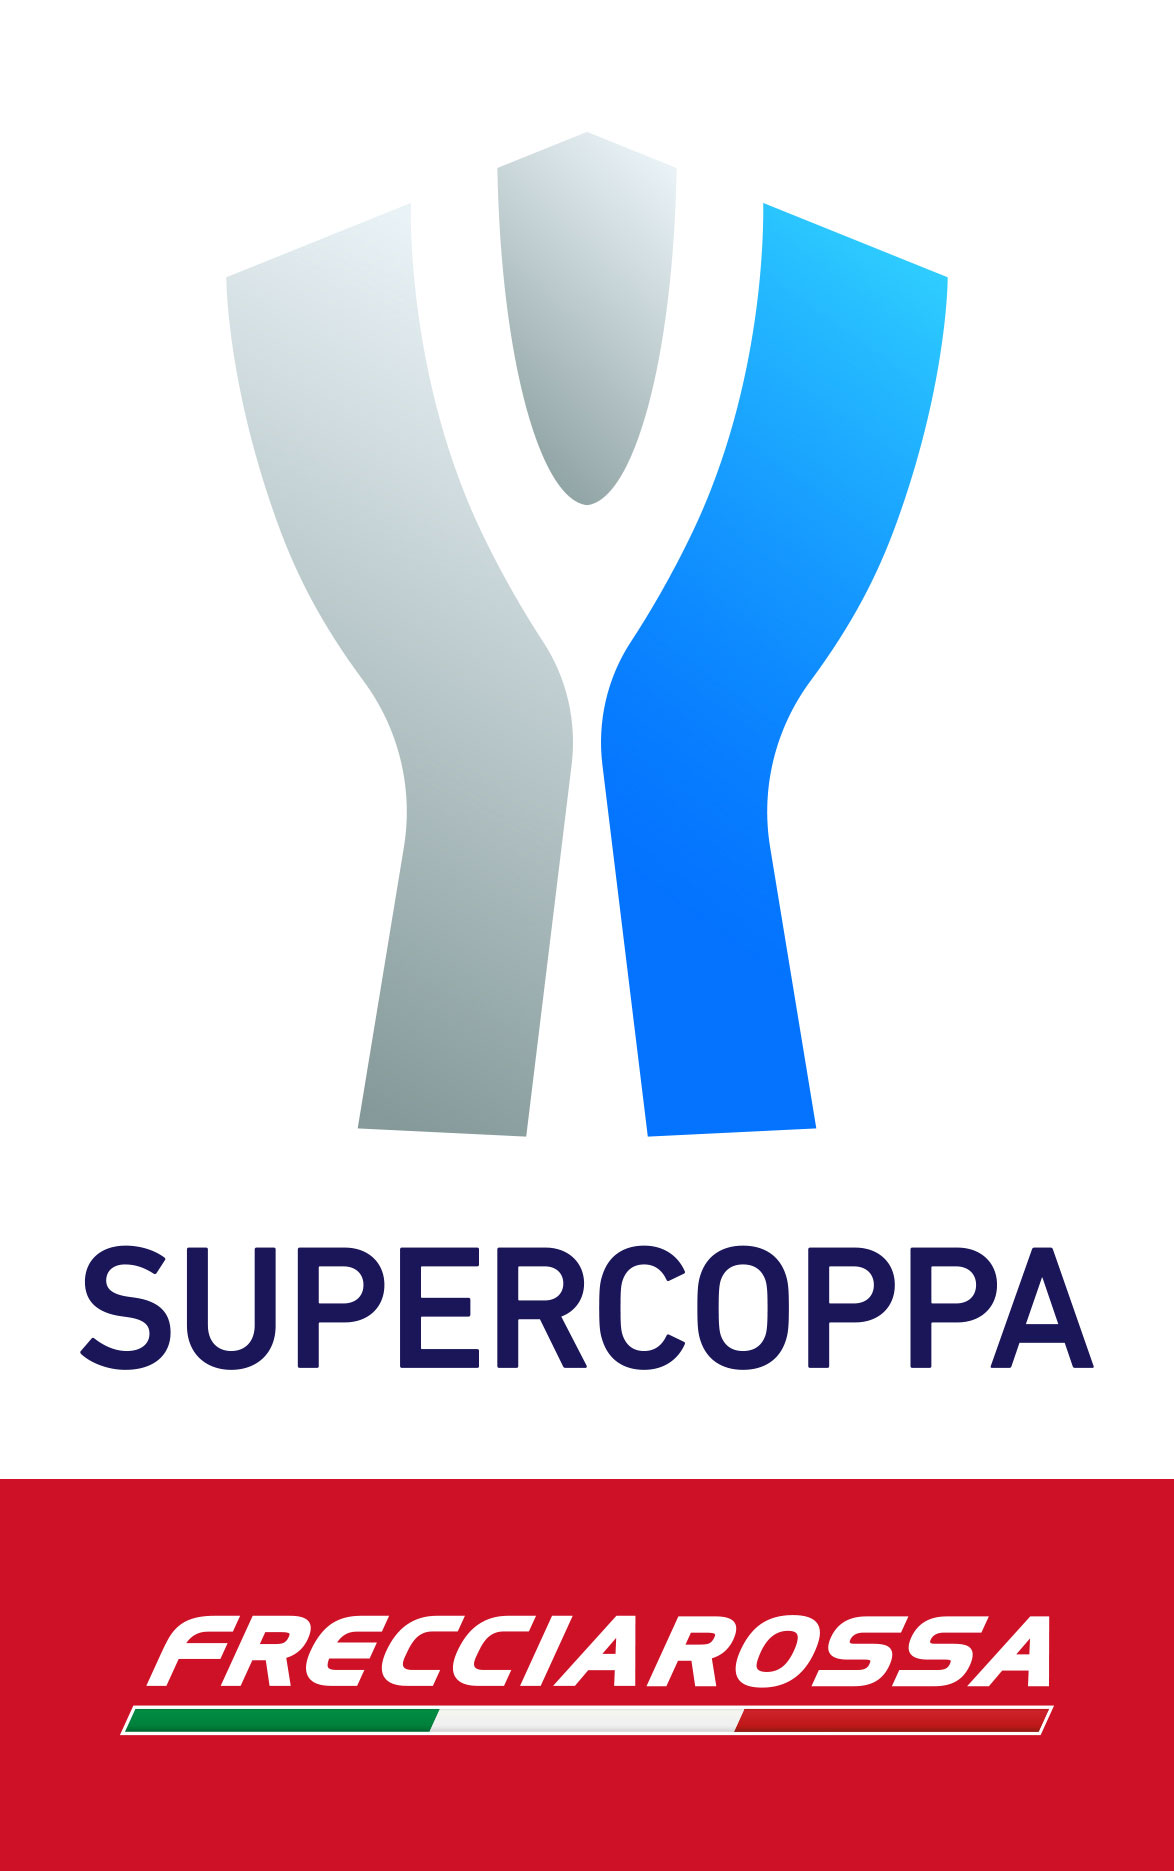 Il logo della Supercoppa Frecciarossa targata Trenitalia